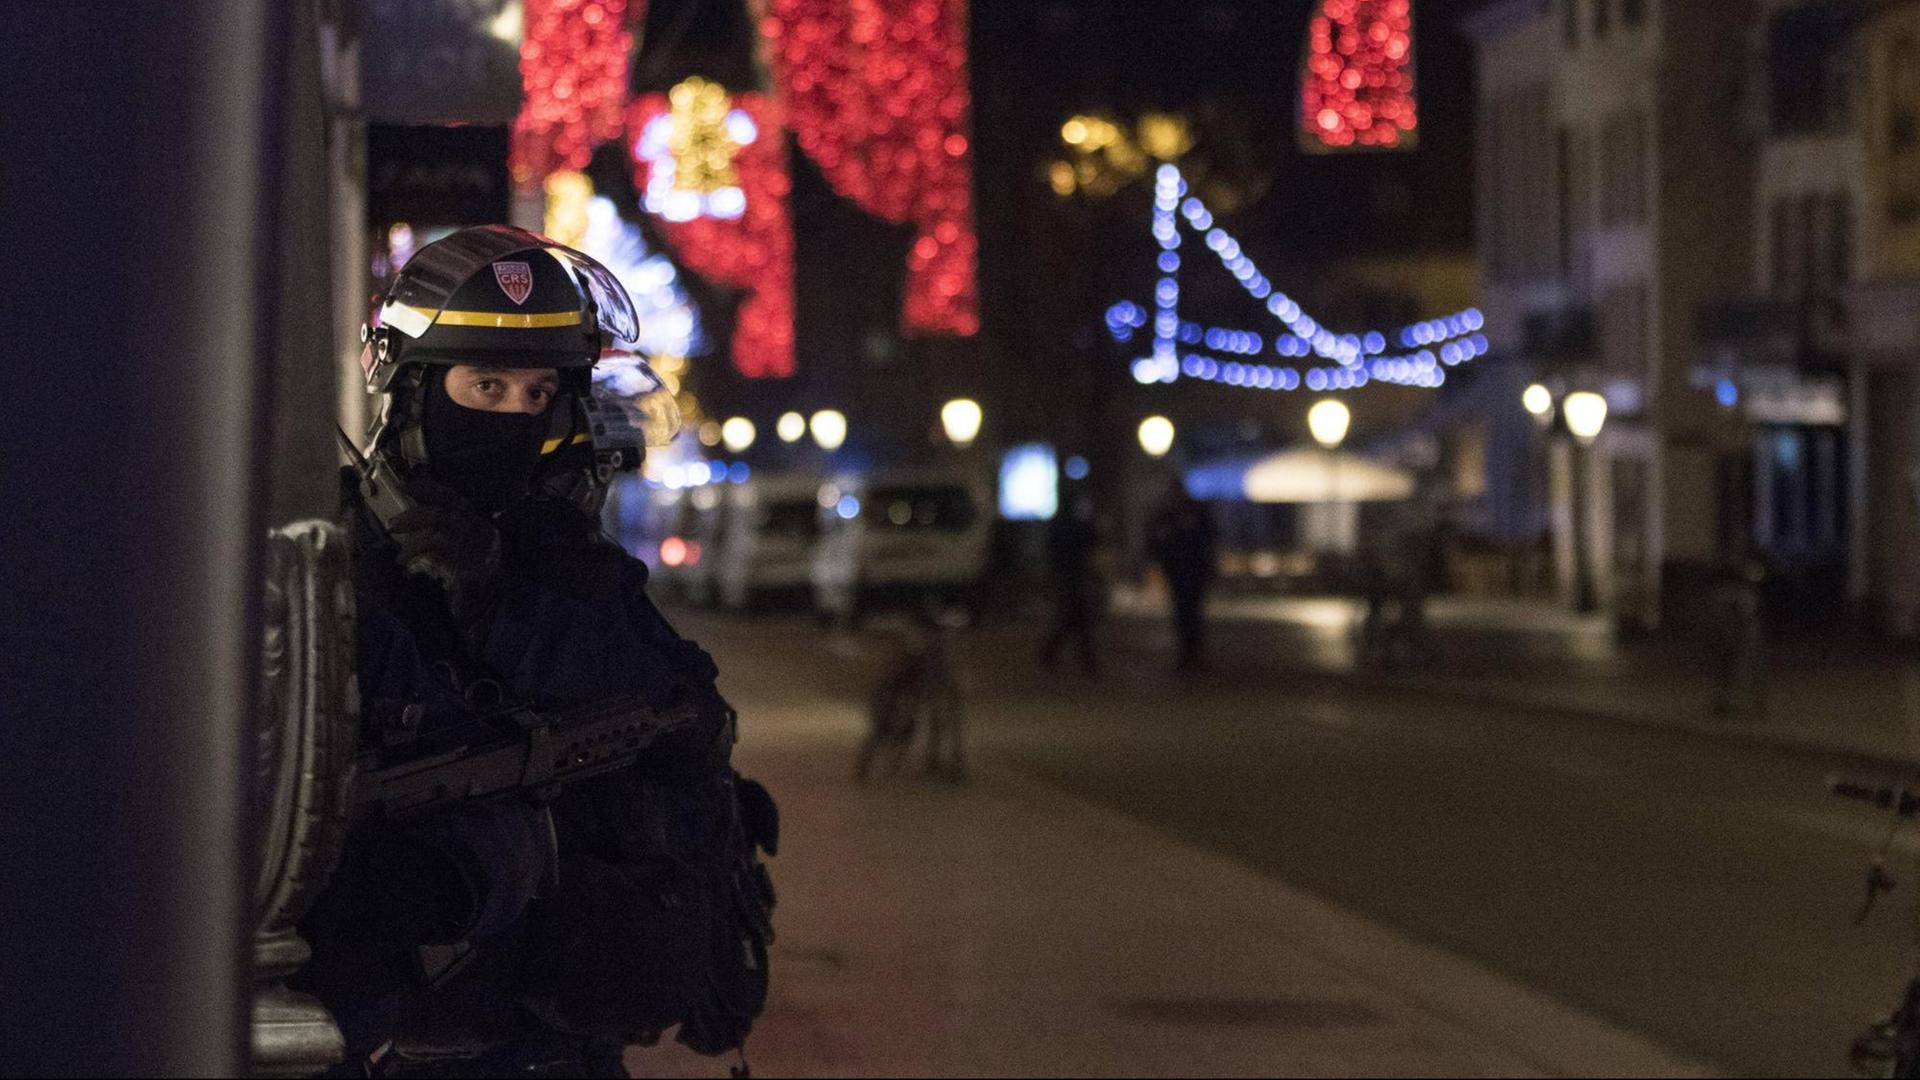 Straßburg: Ein Polizist sichert die Umgebung nach dem ein Mann mehrere Menschen erschossen hat